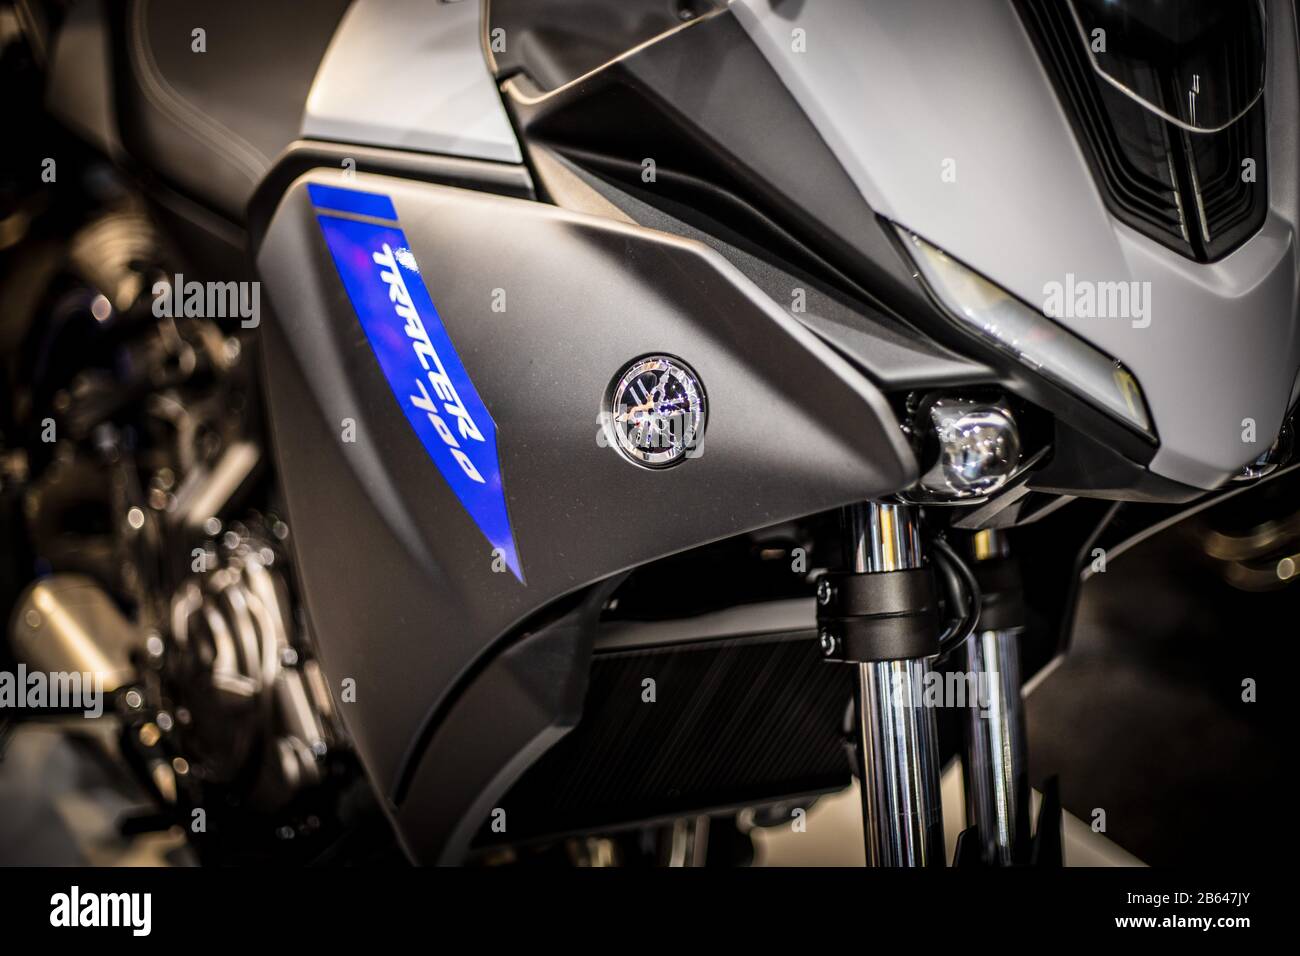 Dettaglio del logo del motociclo. Primo piano del logo Yamaha. Foto Stock